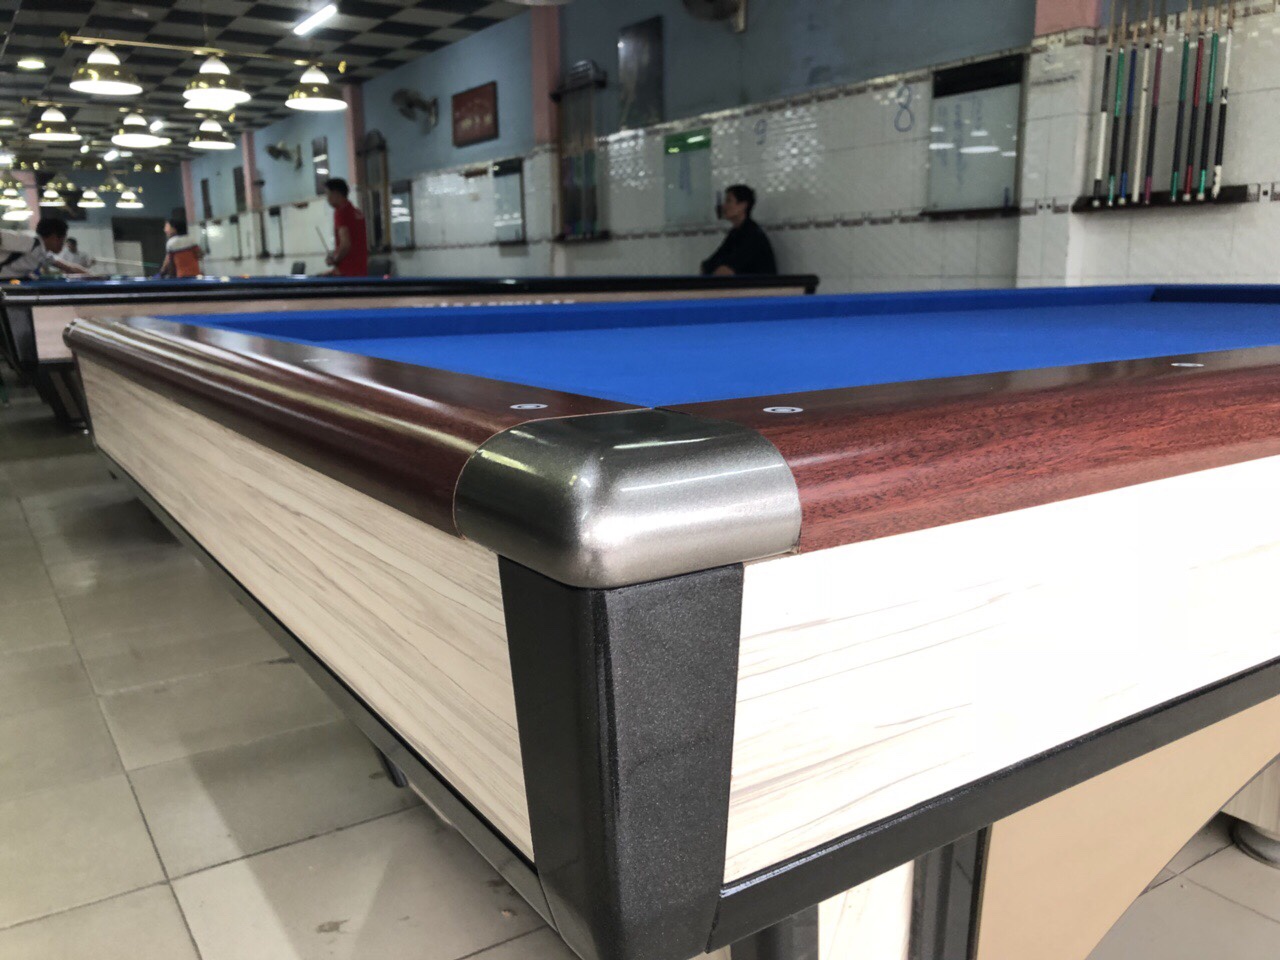  Cơ sở lắp đặt sửa chữa bàn bida Lâm Đồng​​​​​​​